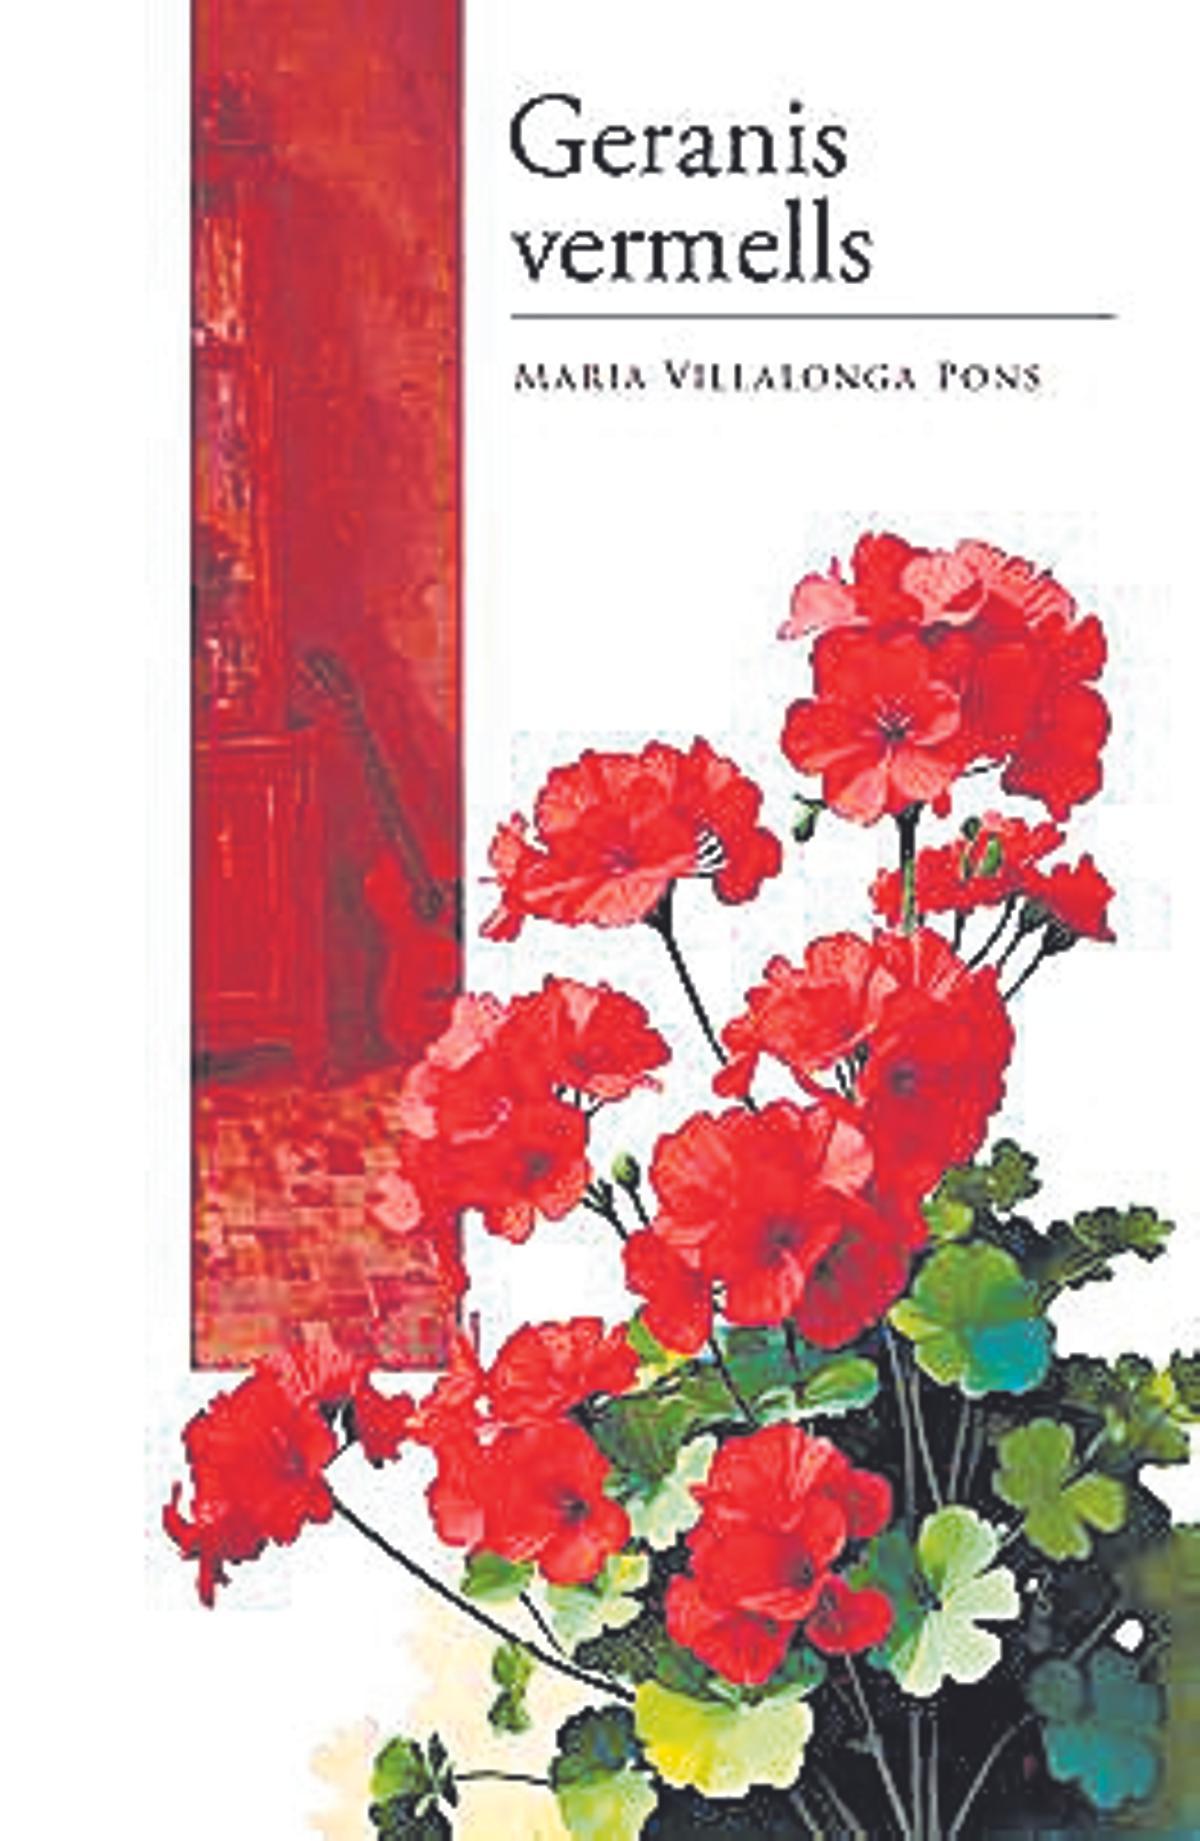 Portada del llibre, Geranis vermells, de Maria Villalonga Pons.